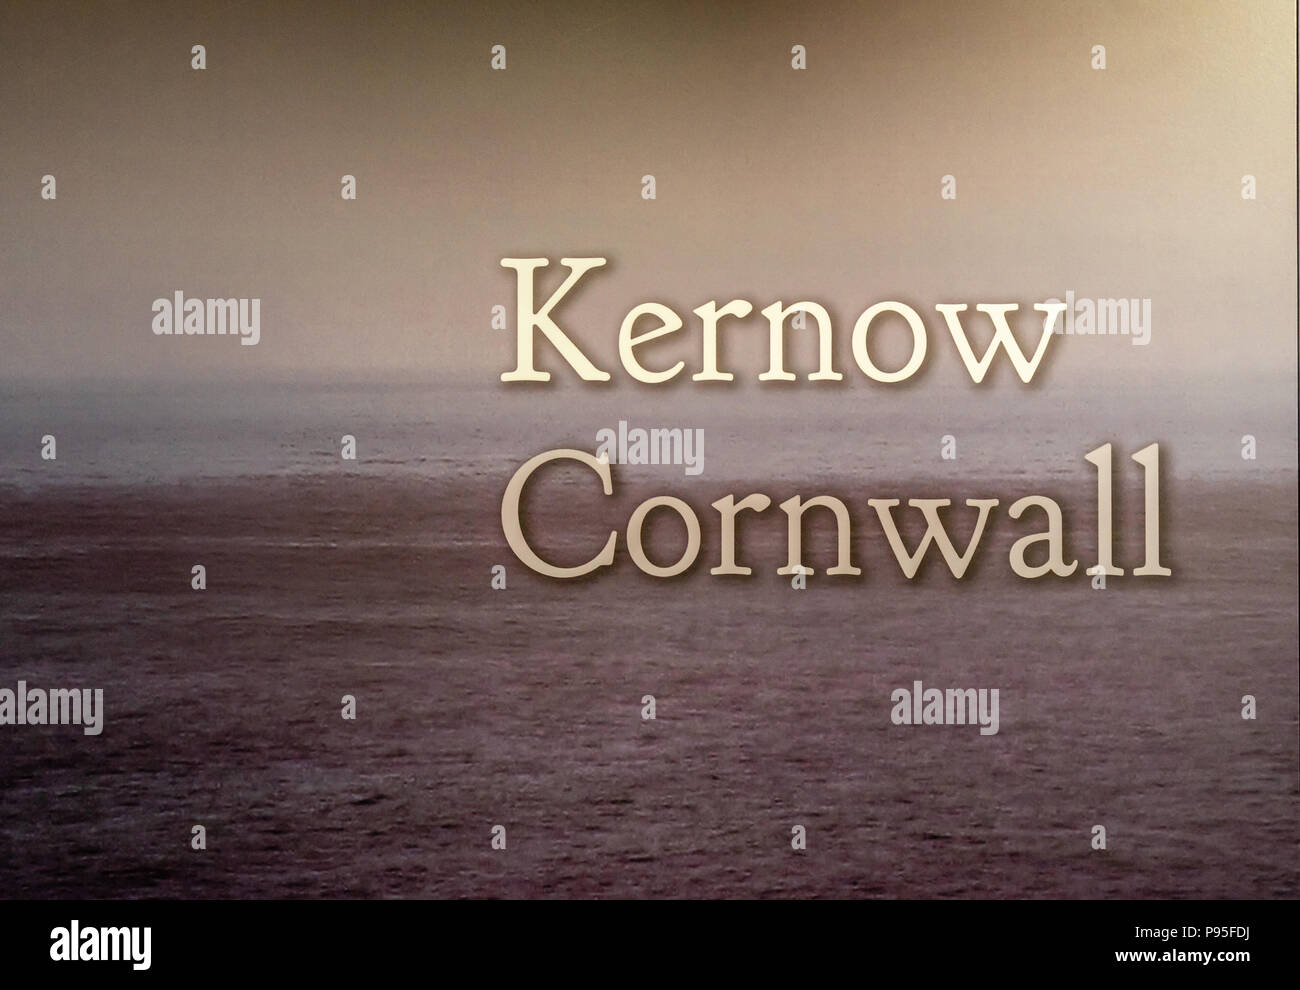 (Langue cornique Kernow) sur une affiche dans une exposition à Cornwall, Cornwall, Angleterre, RU concept Banque D'Images